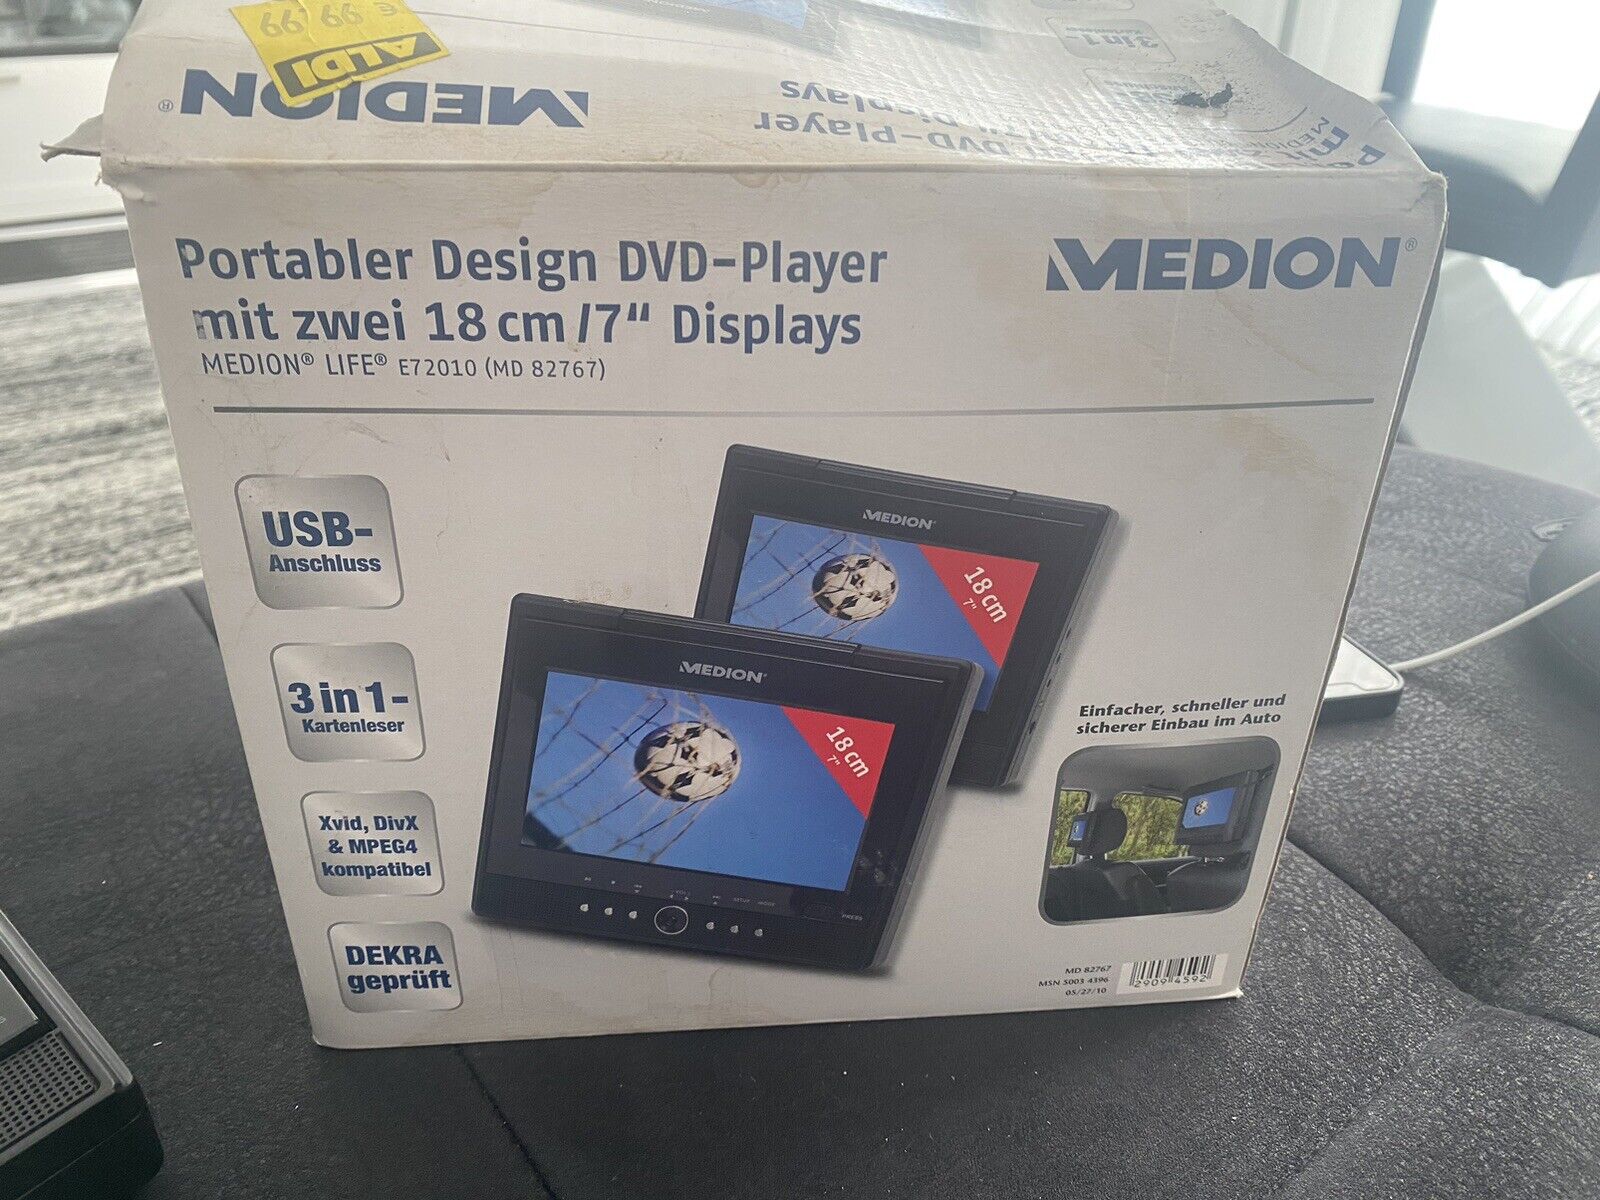 Portabler Design DVD player von Medion